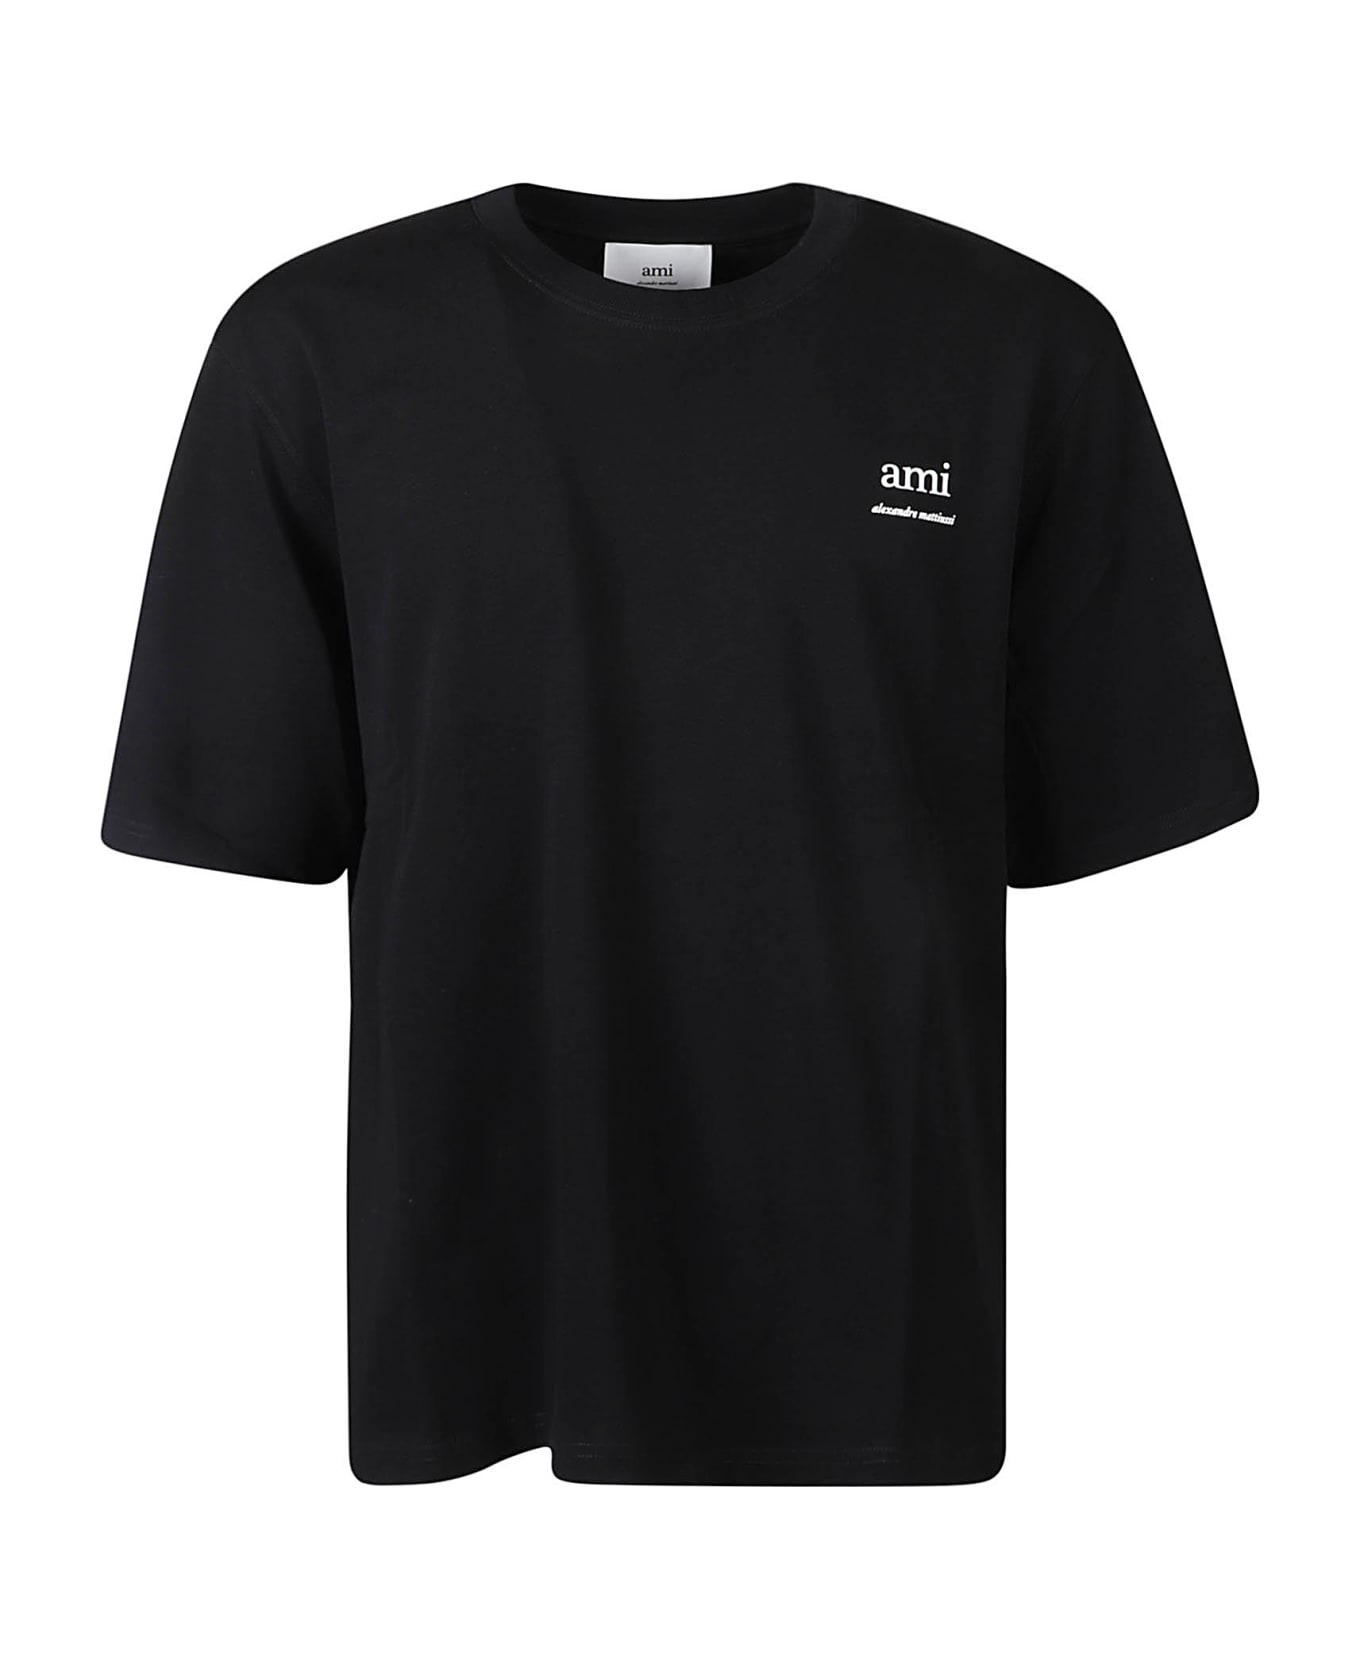 Ami Alexandre Mattiussi Chest Logo Print T-shirt - Black